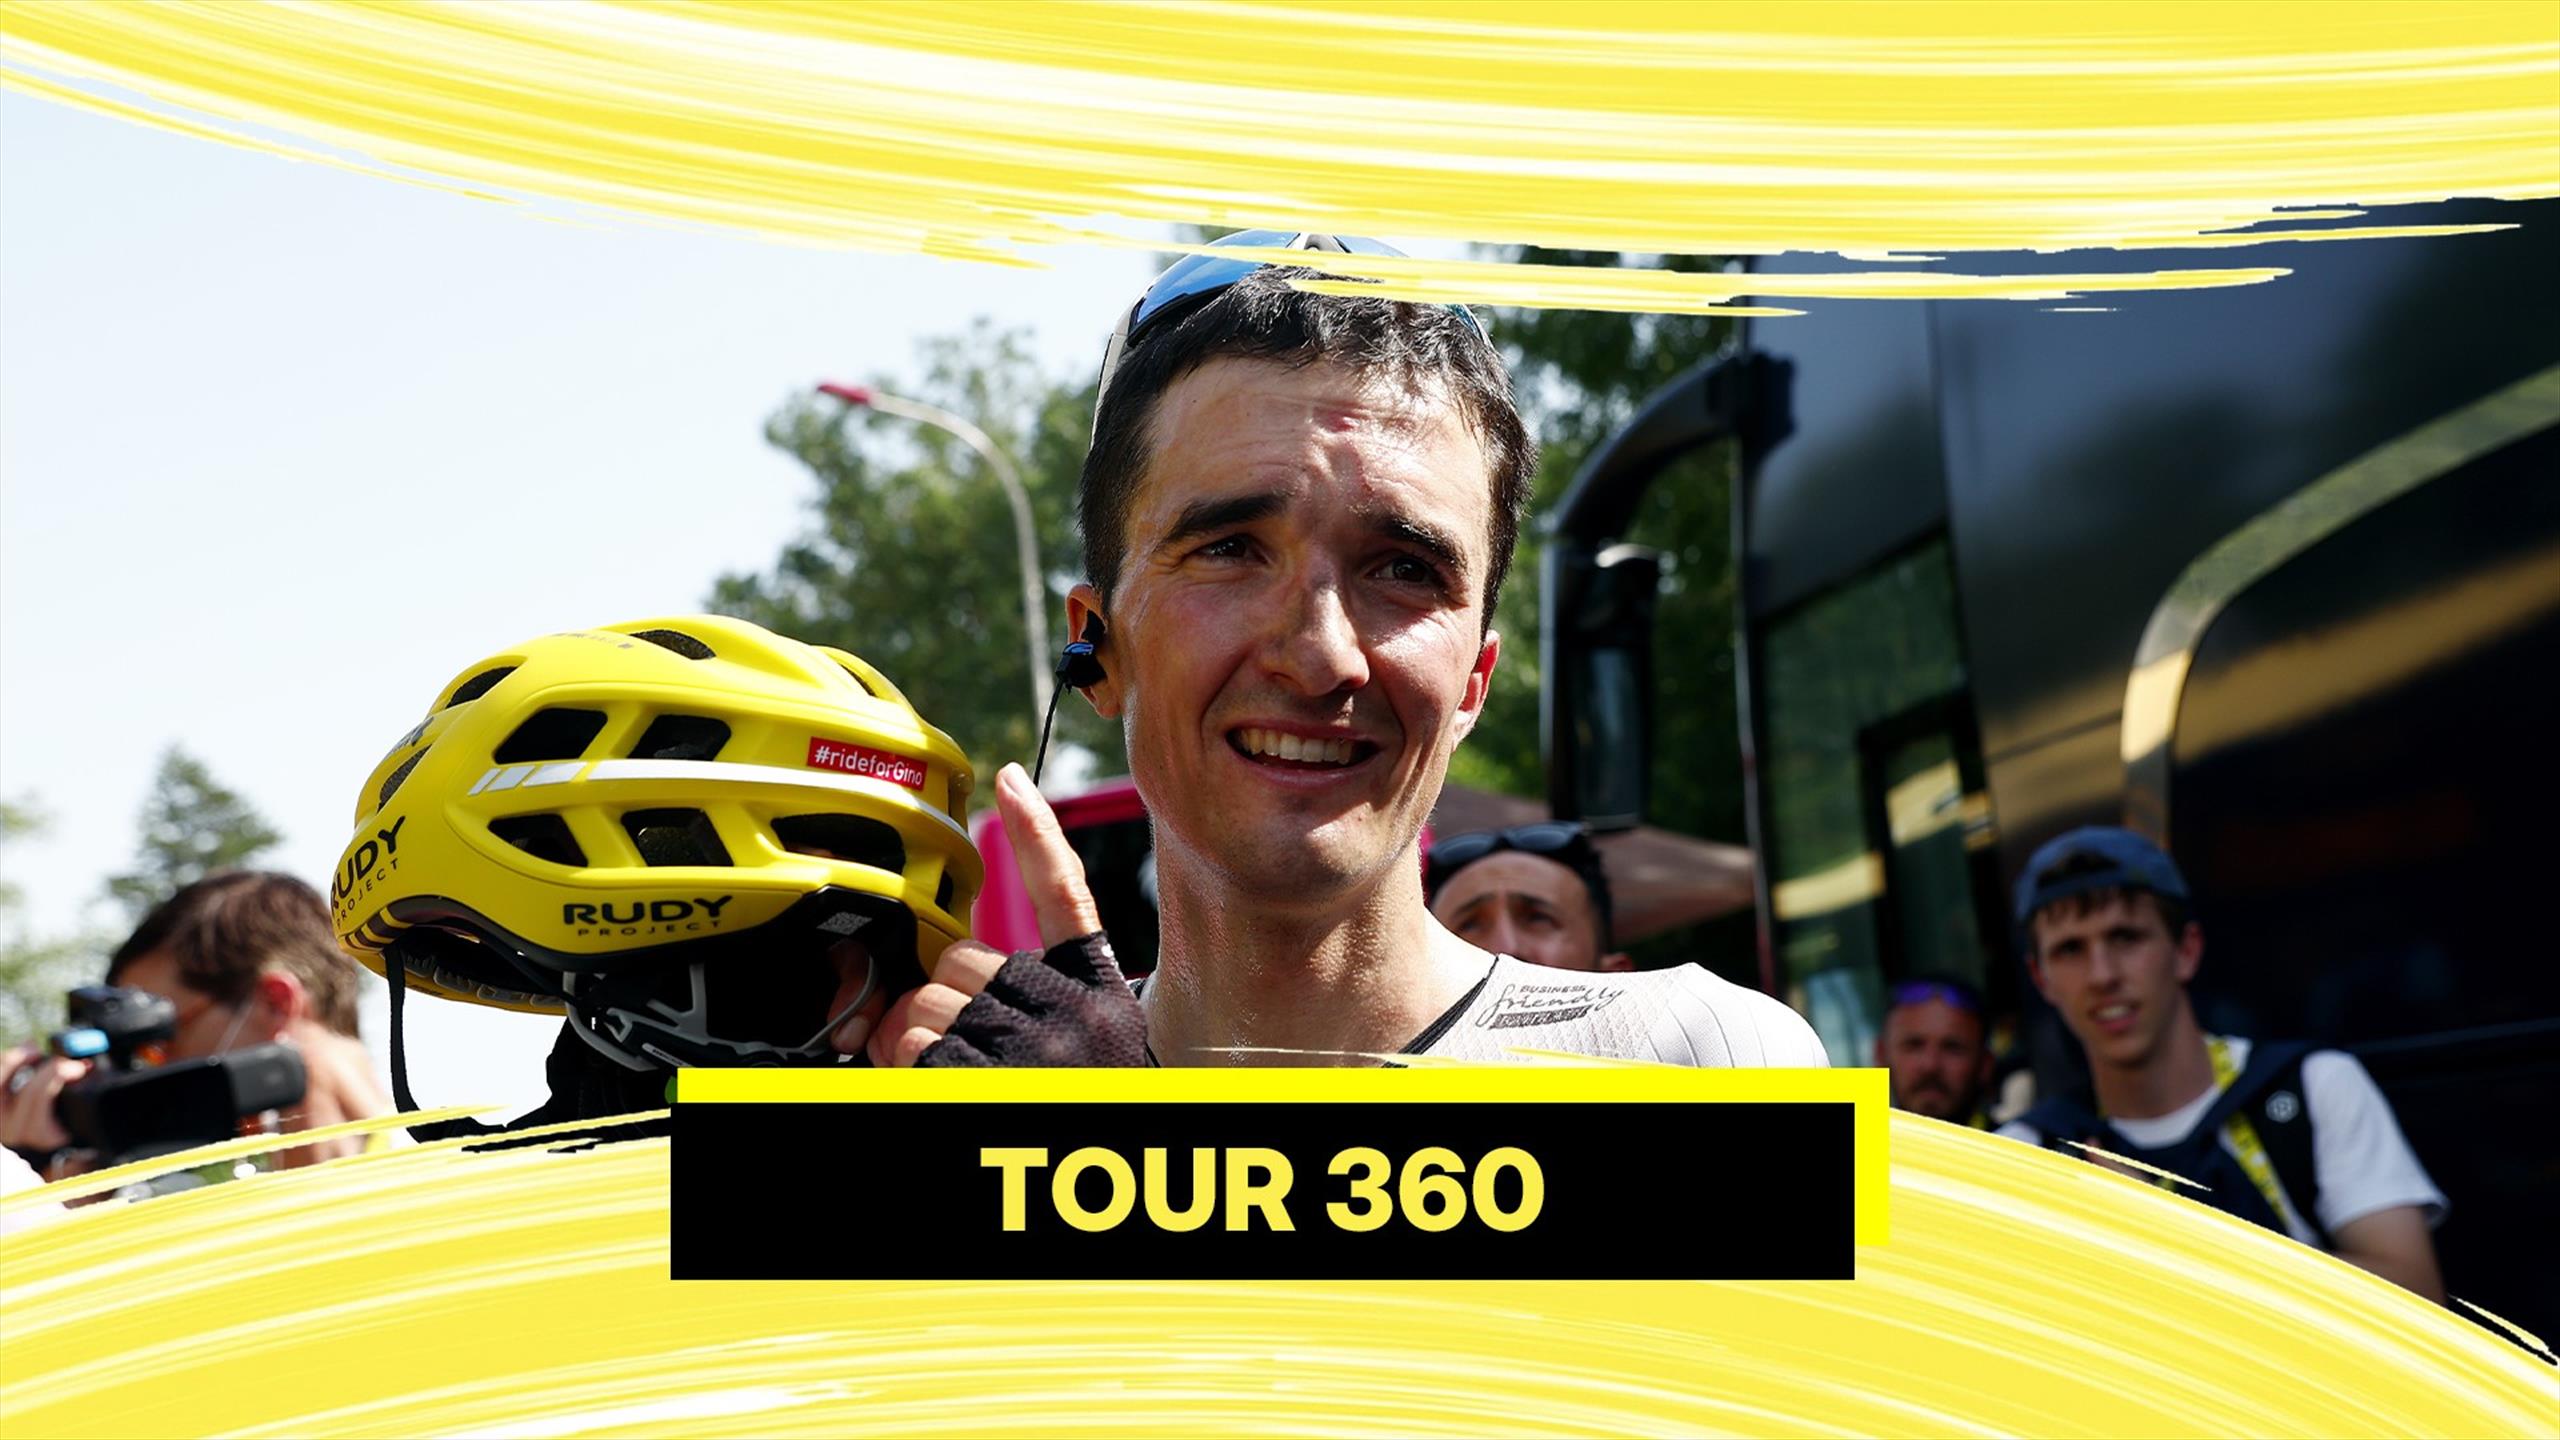 Tour 360: tappa esplosiva, Bilbao vince e risale in classifica